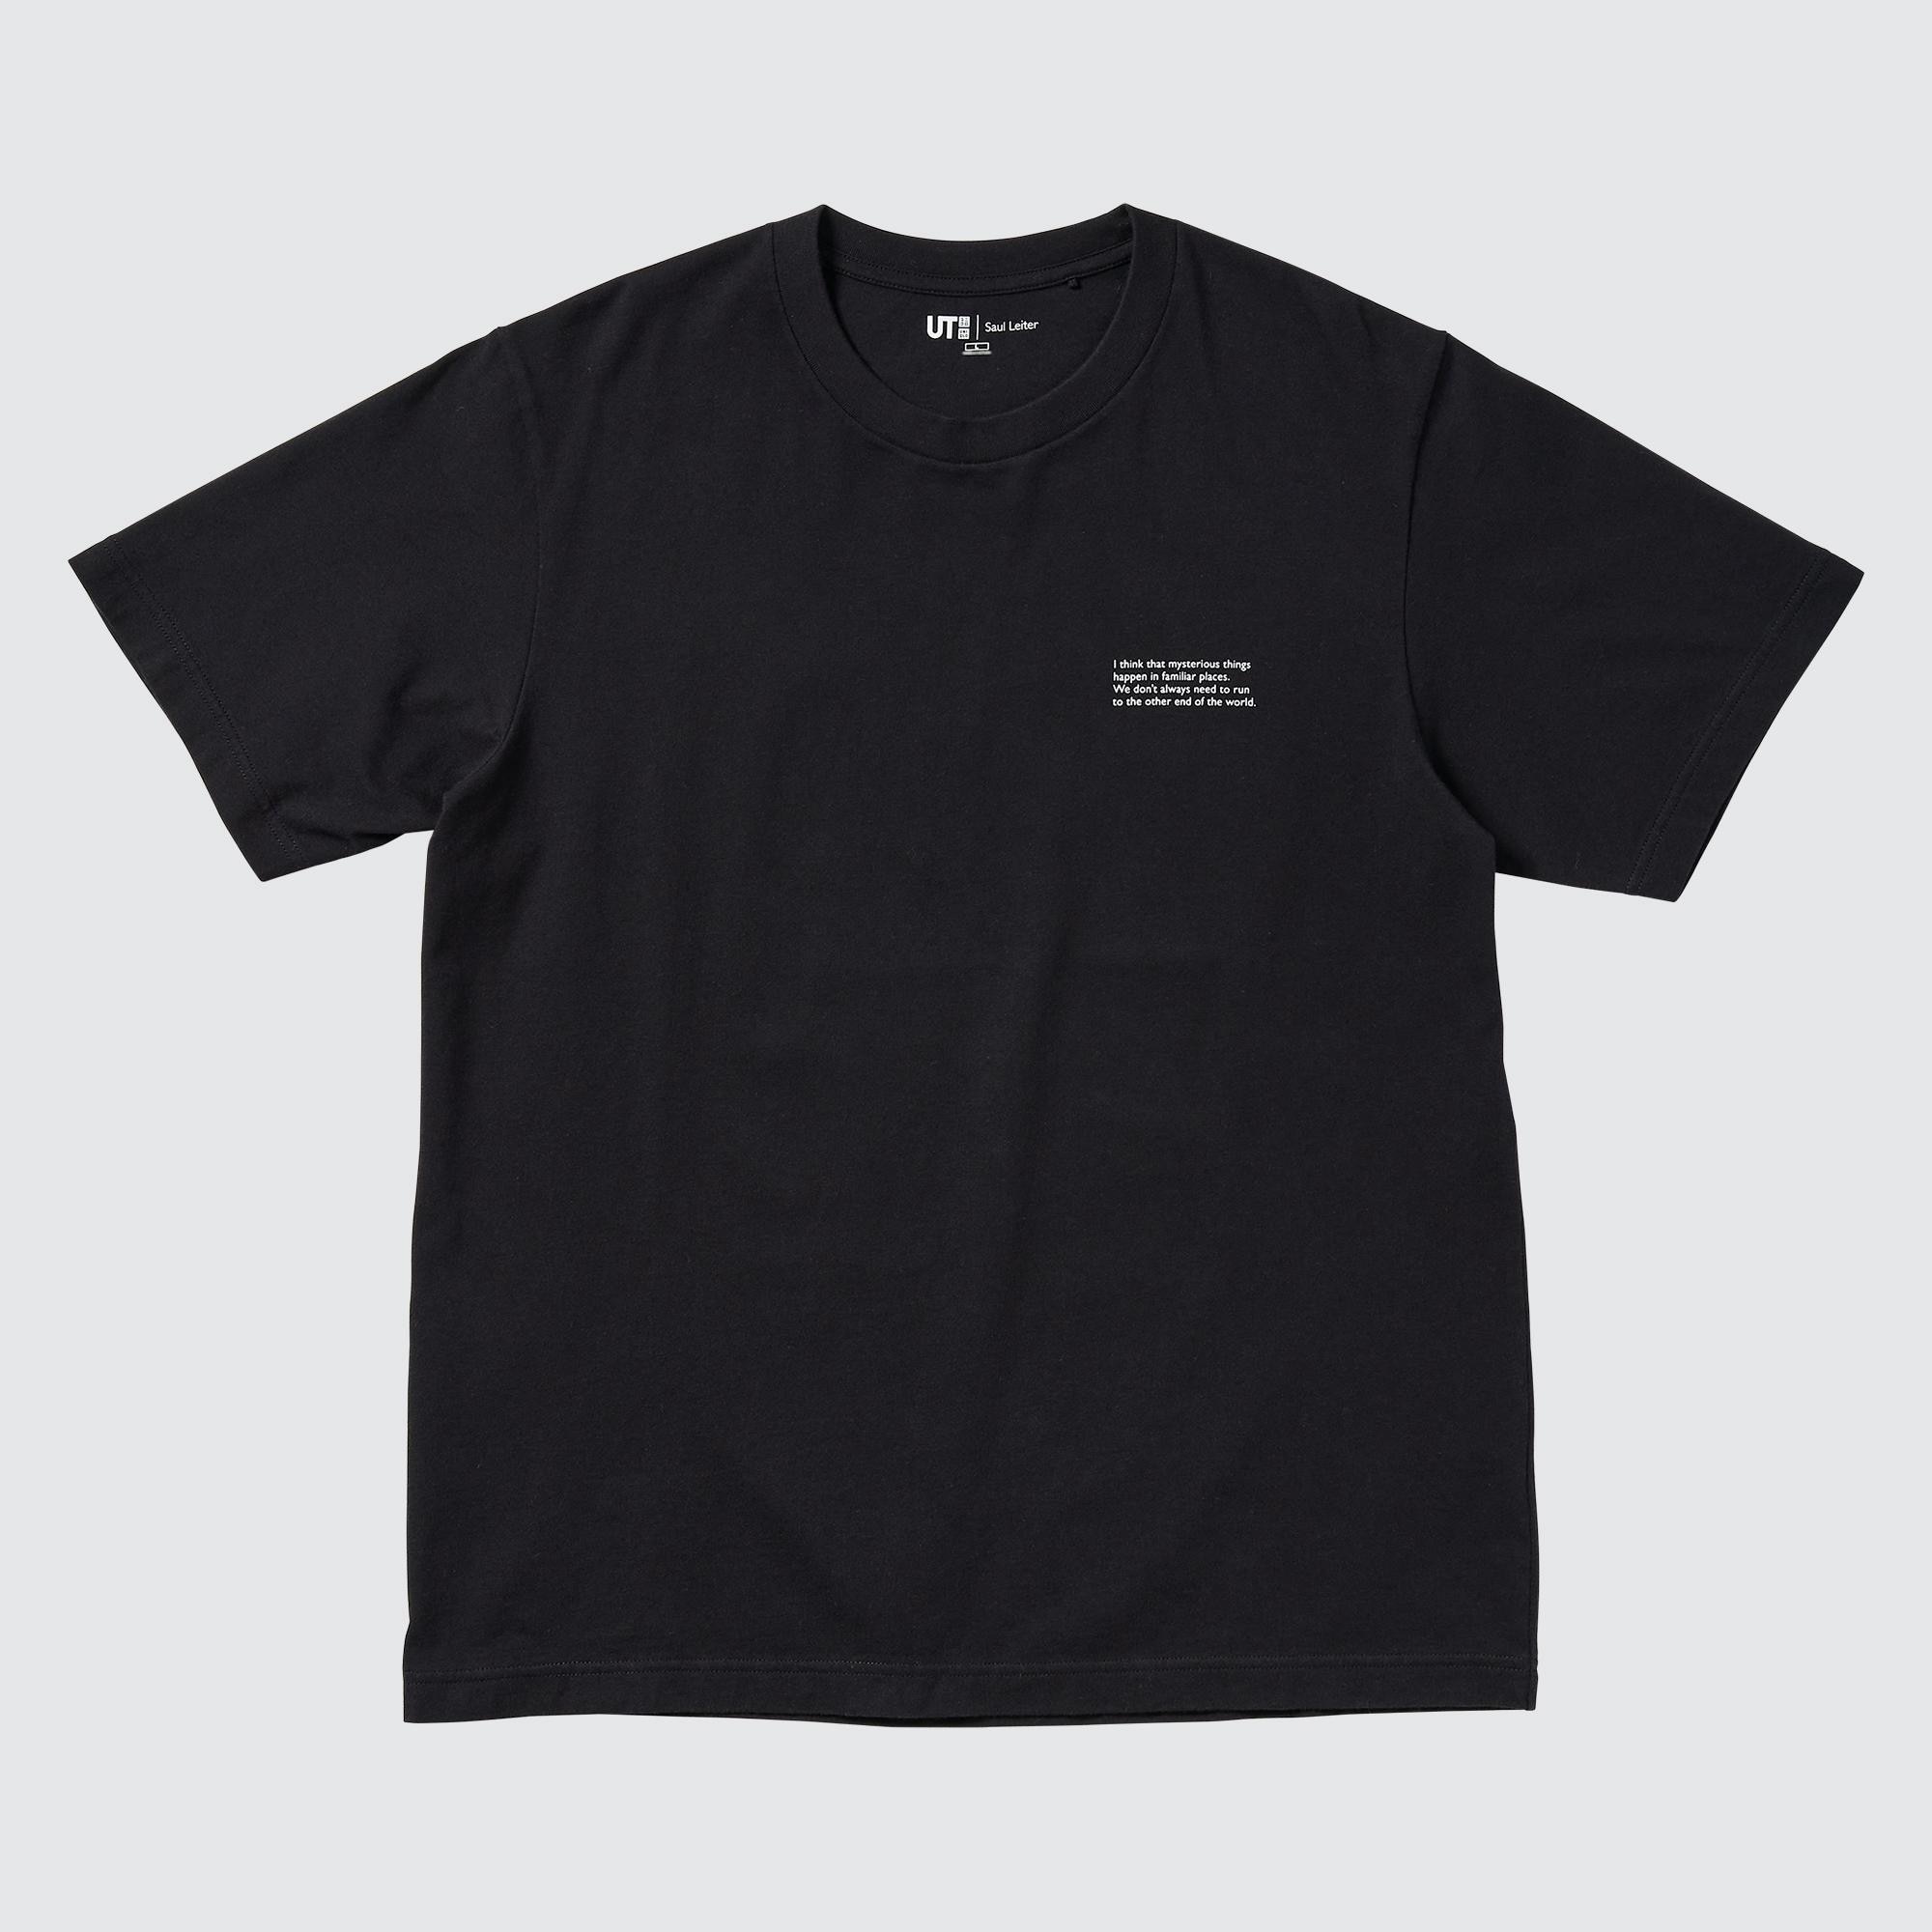 Saul Leiter UT (Short-Sleeve Graphic T-Shirt) | UNIQLO US